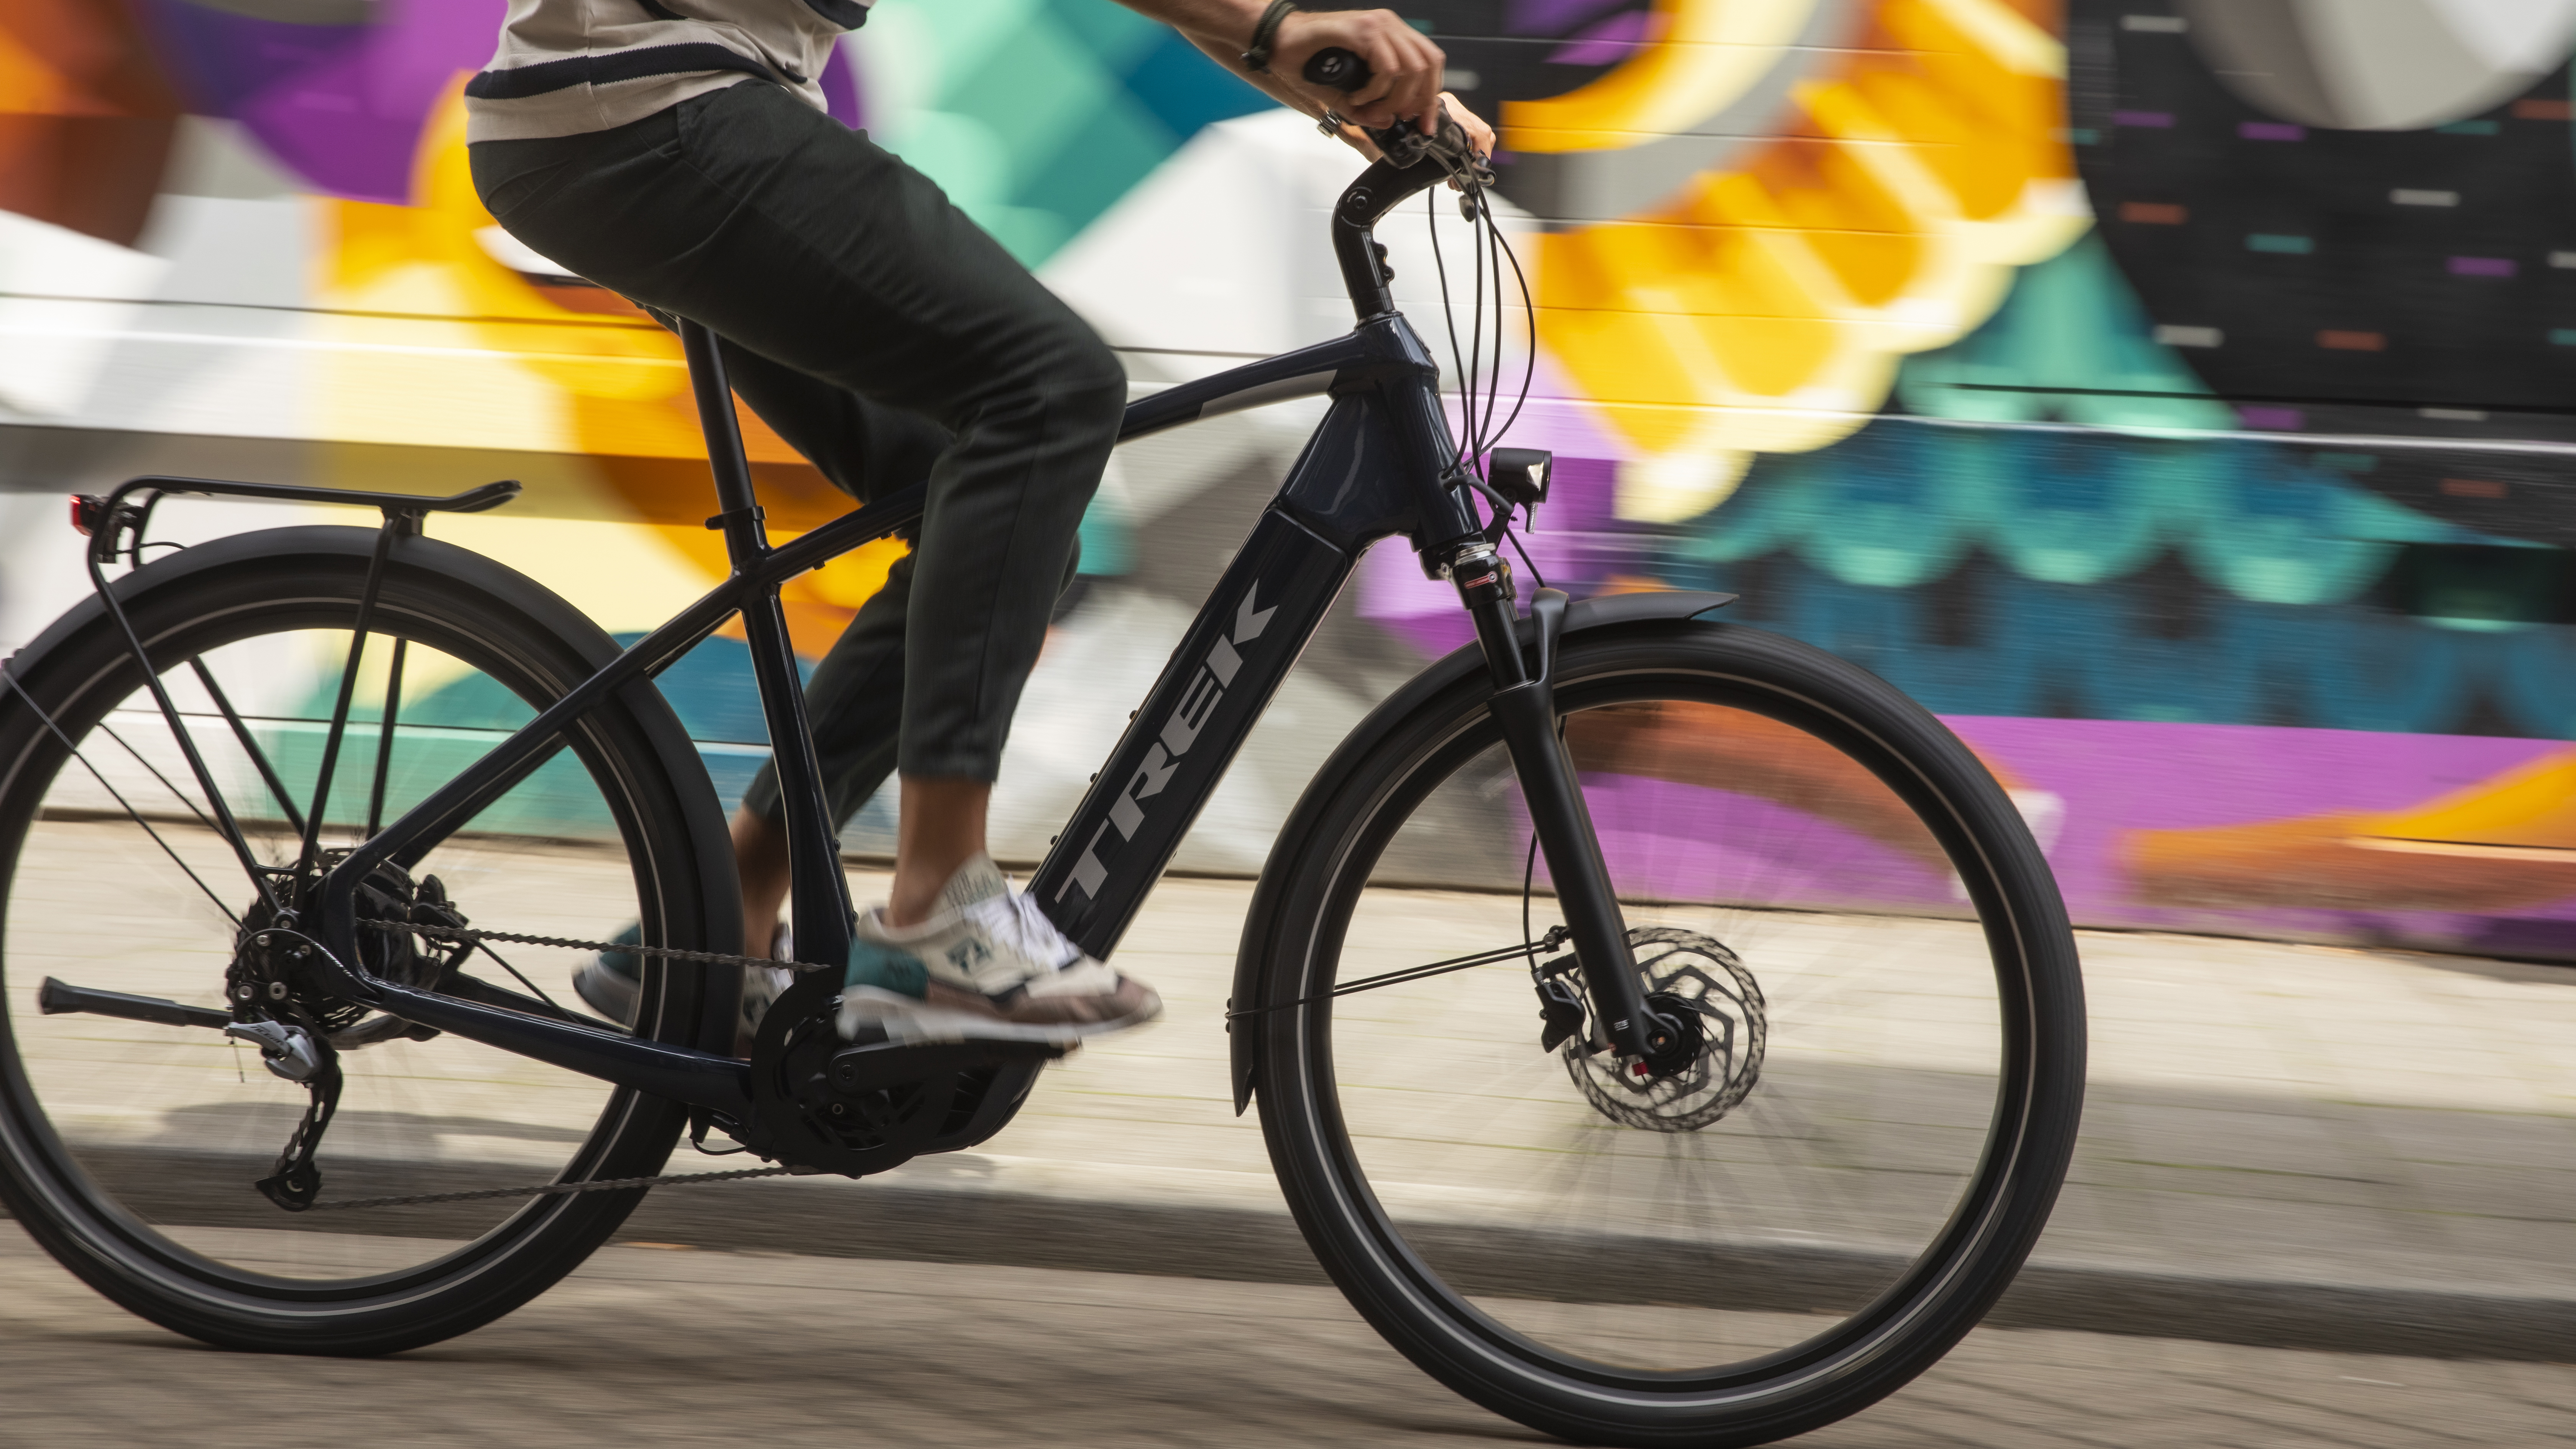 Oogverblindend ethisch lijn Deze e-bike is verkozen tot dé elektrische fiets van 2020